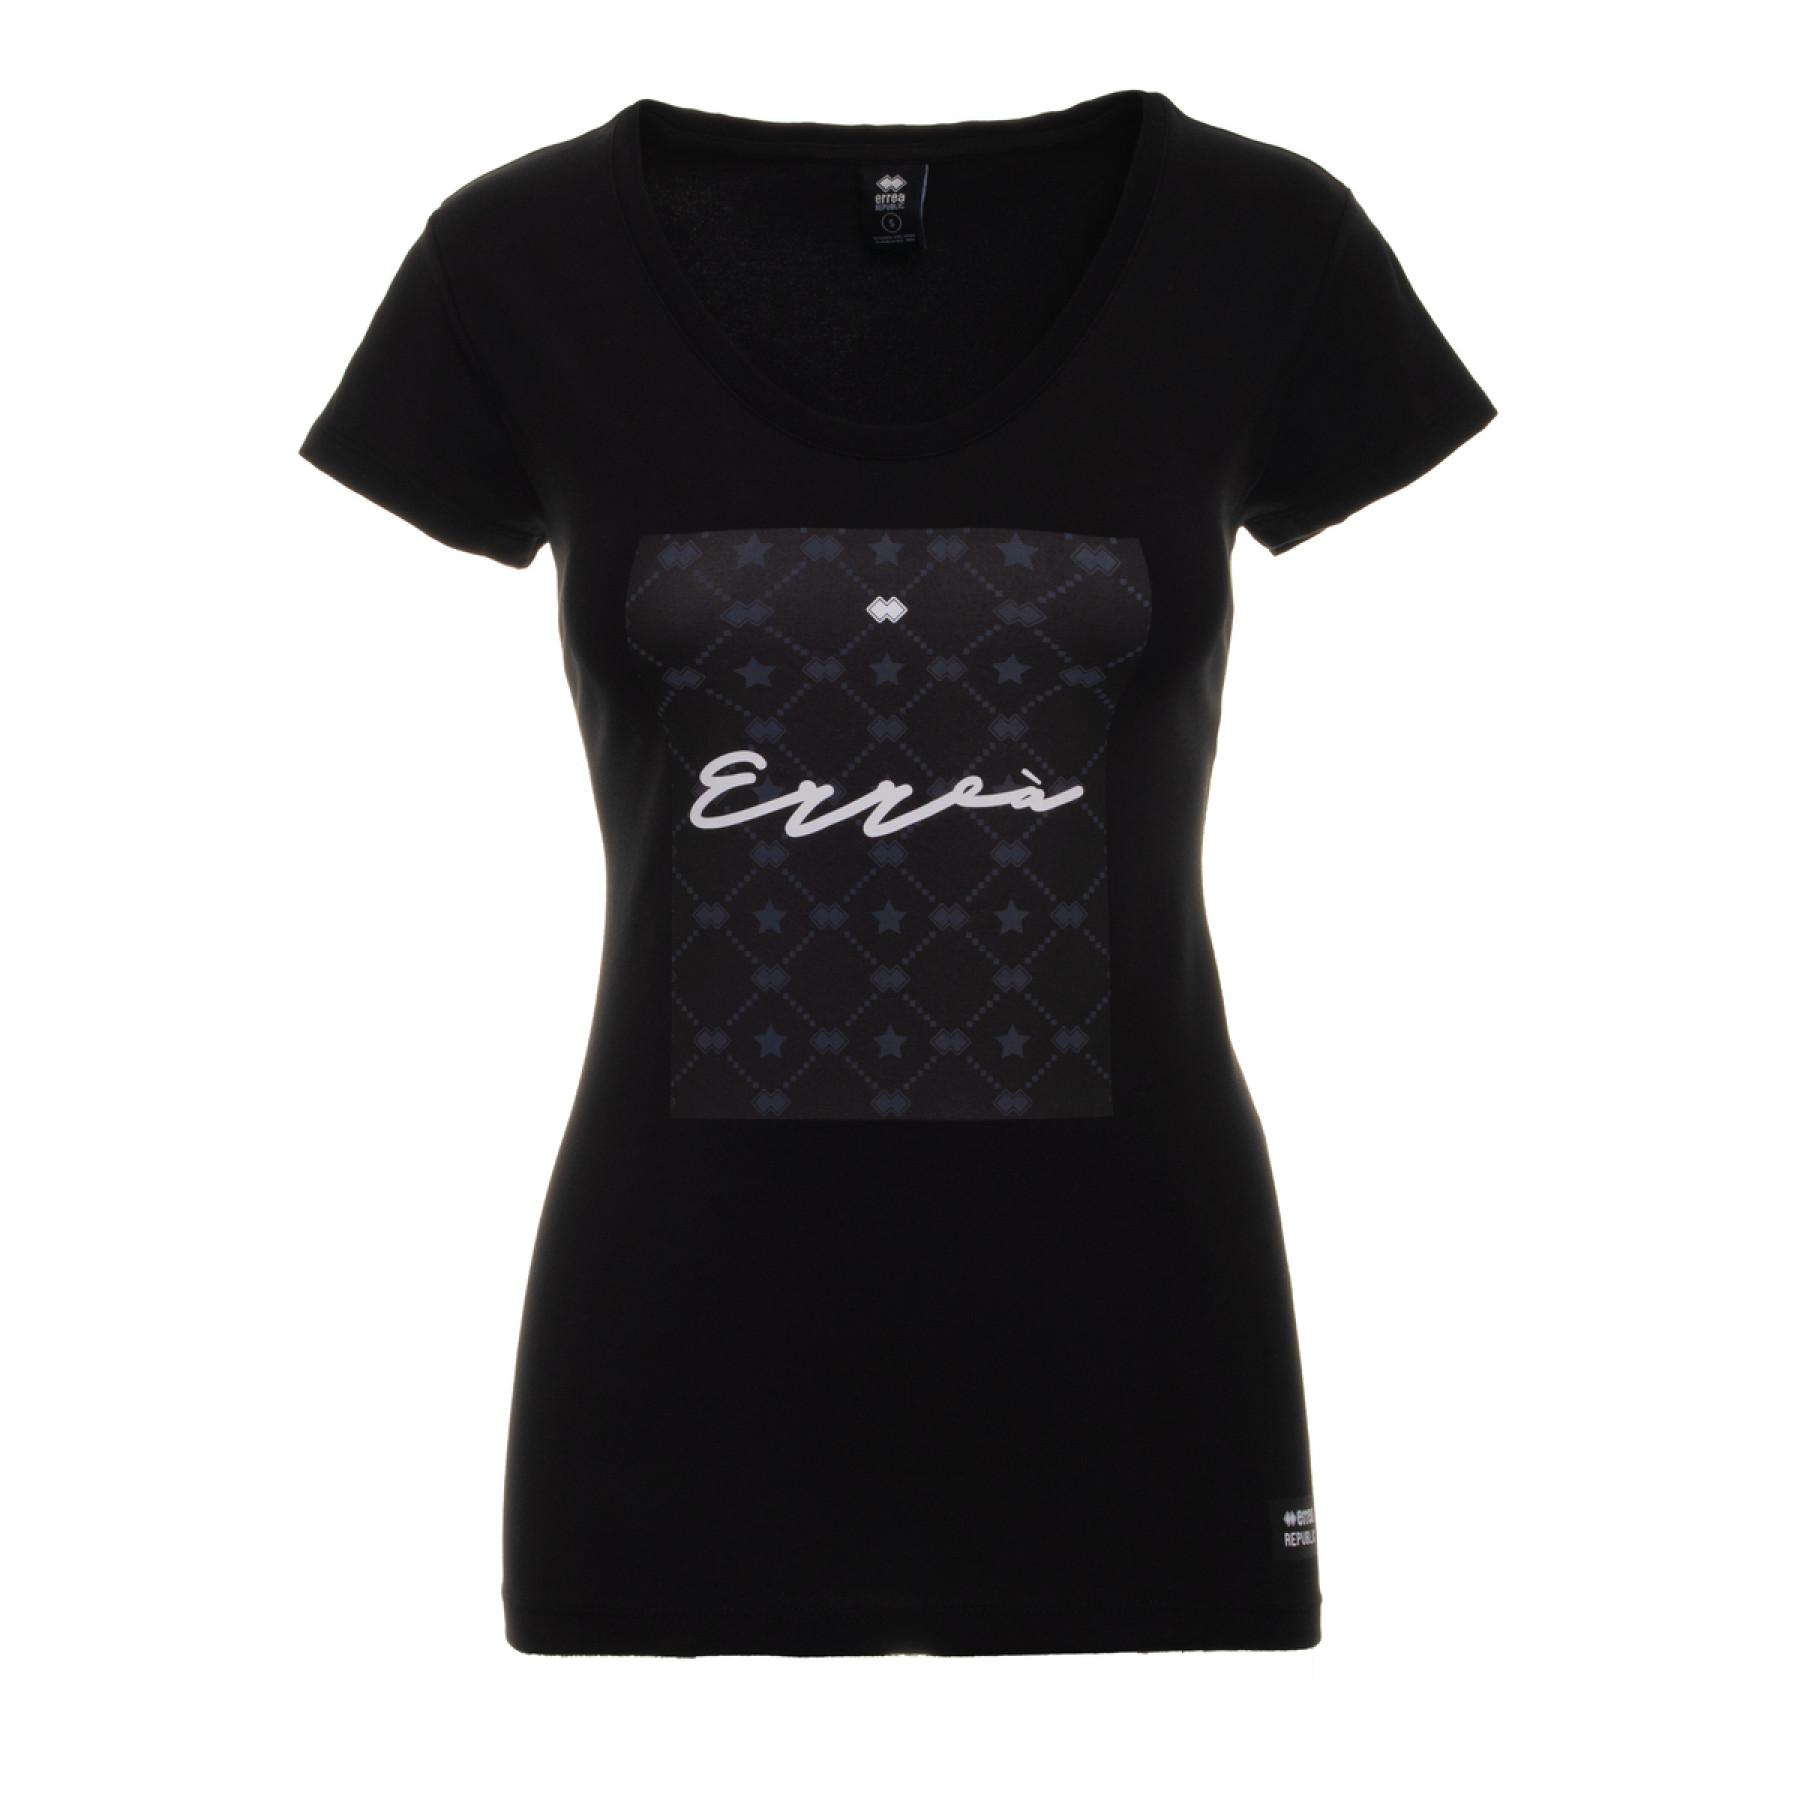 T-shirt ragazza Errea essential